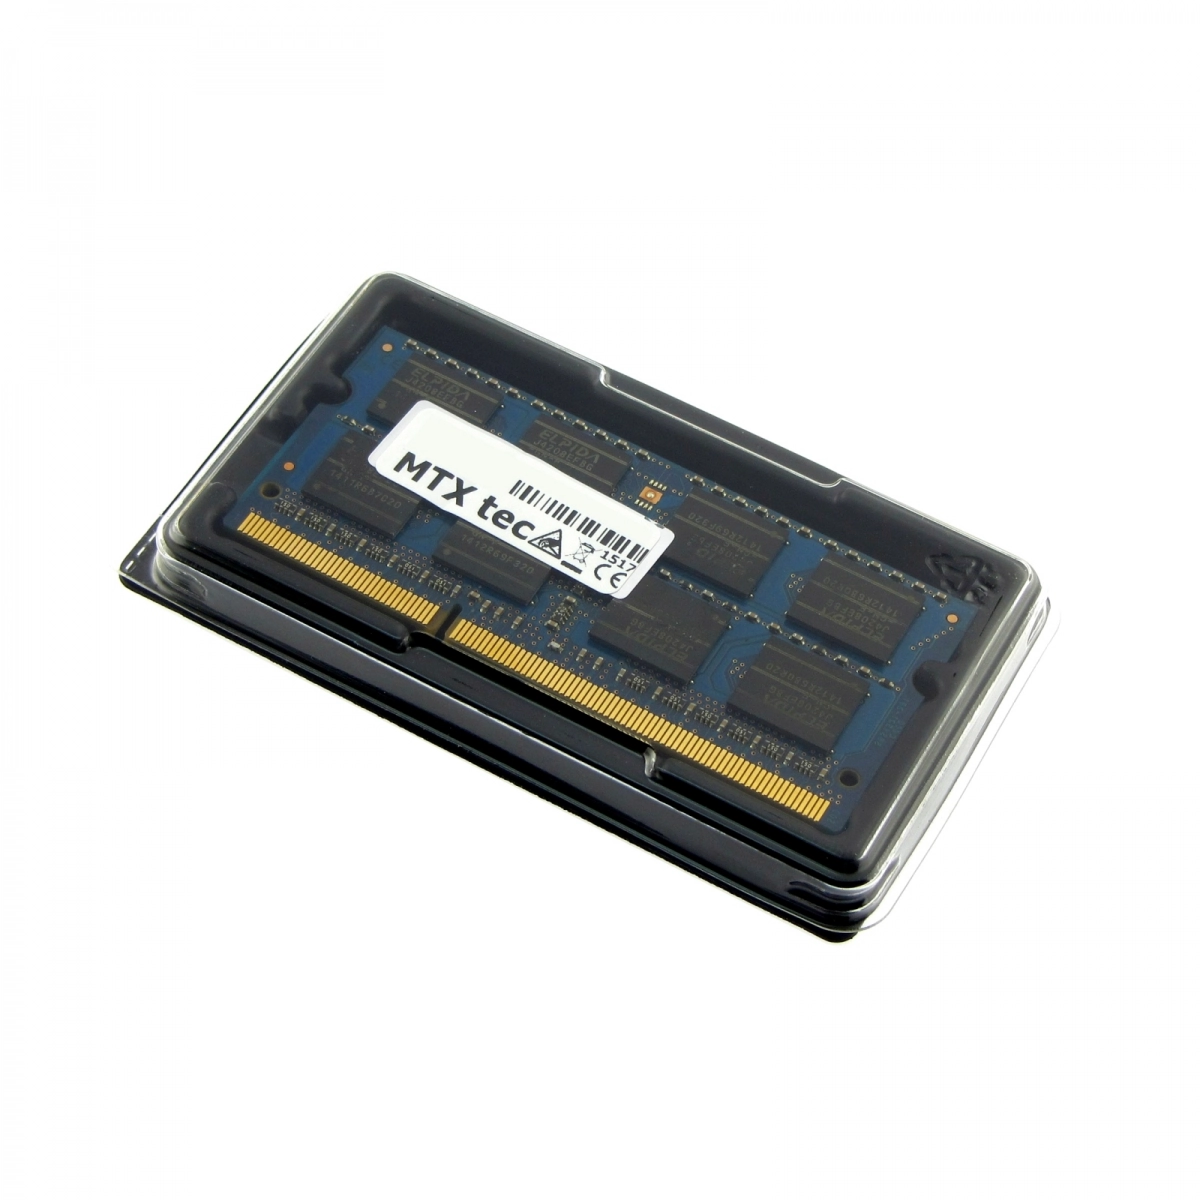 MTXtec Arbeitsspeicher 8 GB RAM für HP EliteBook Folio 9470m